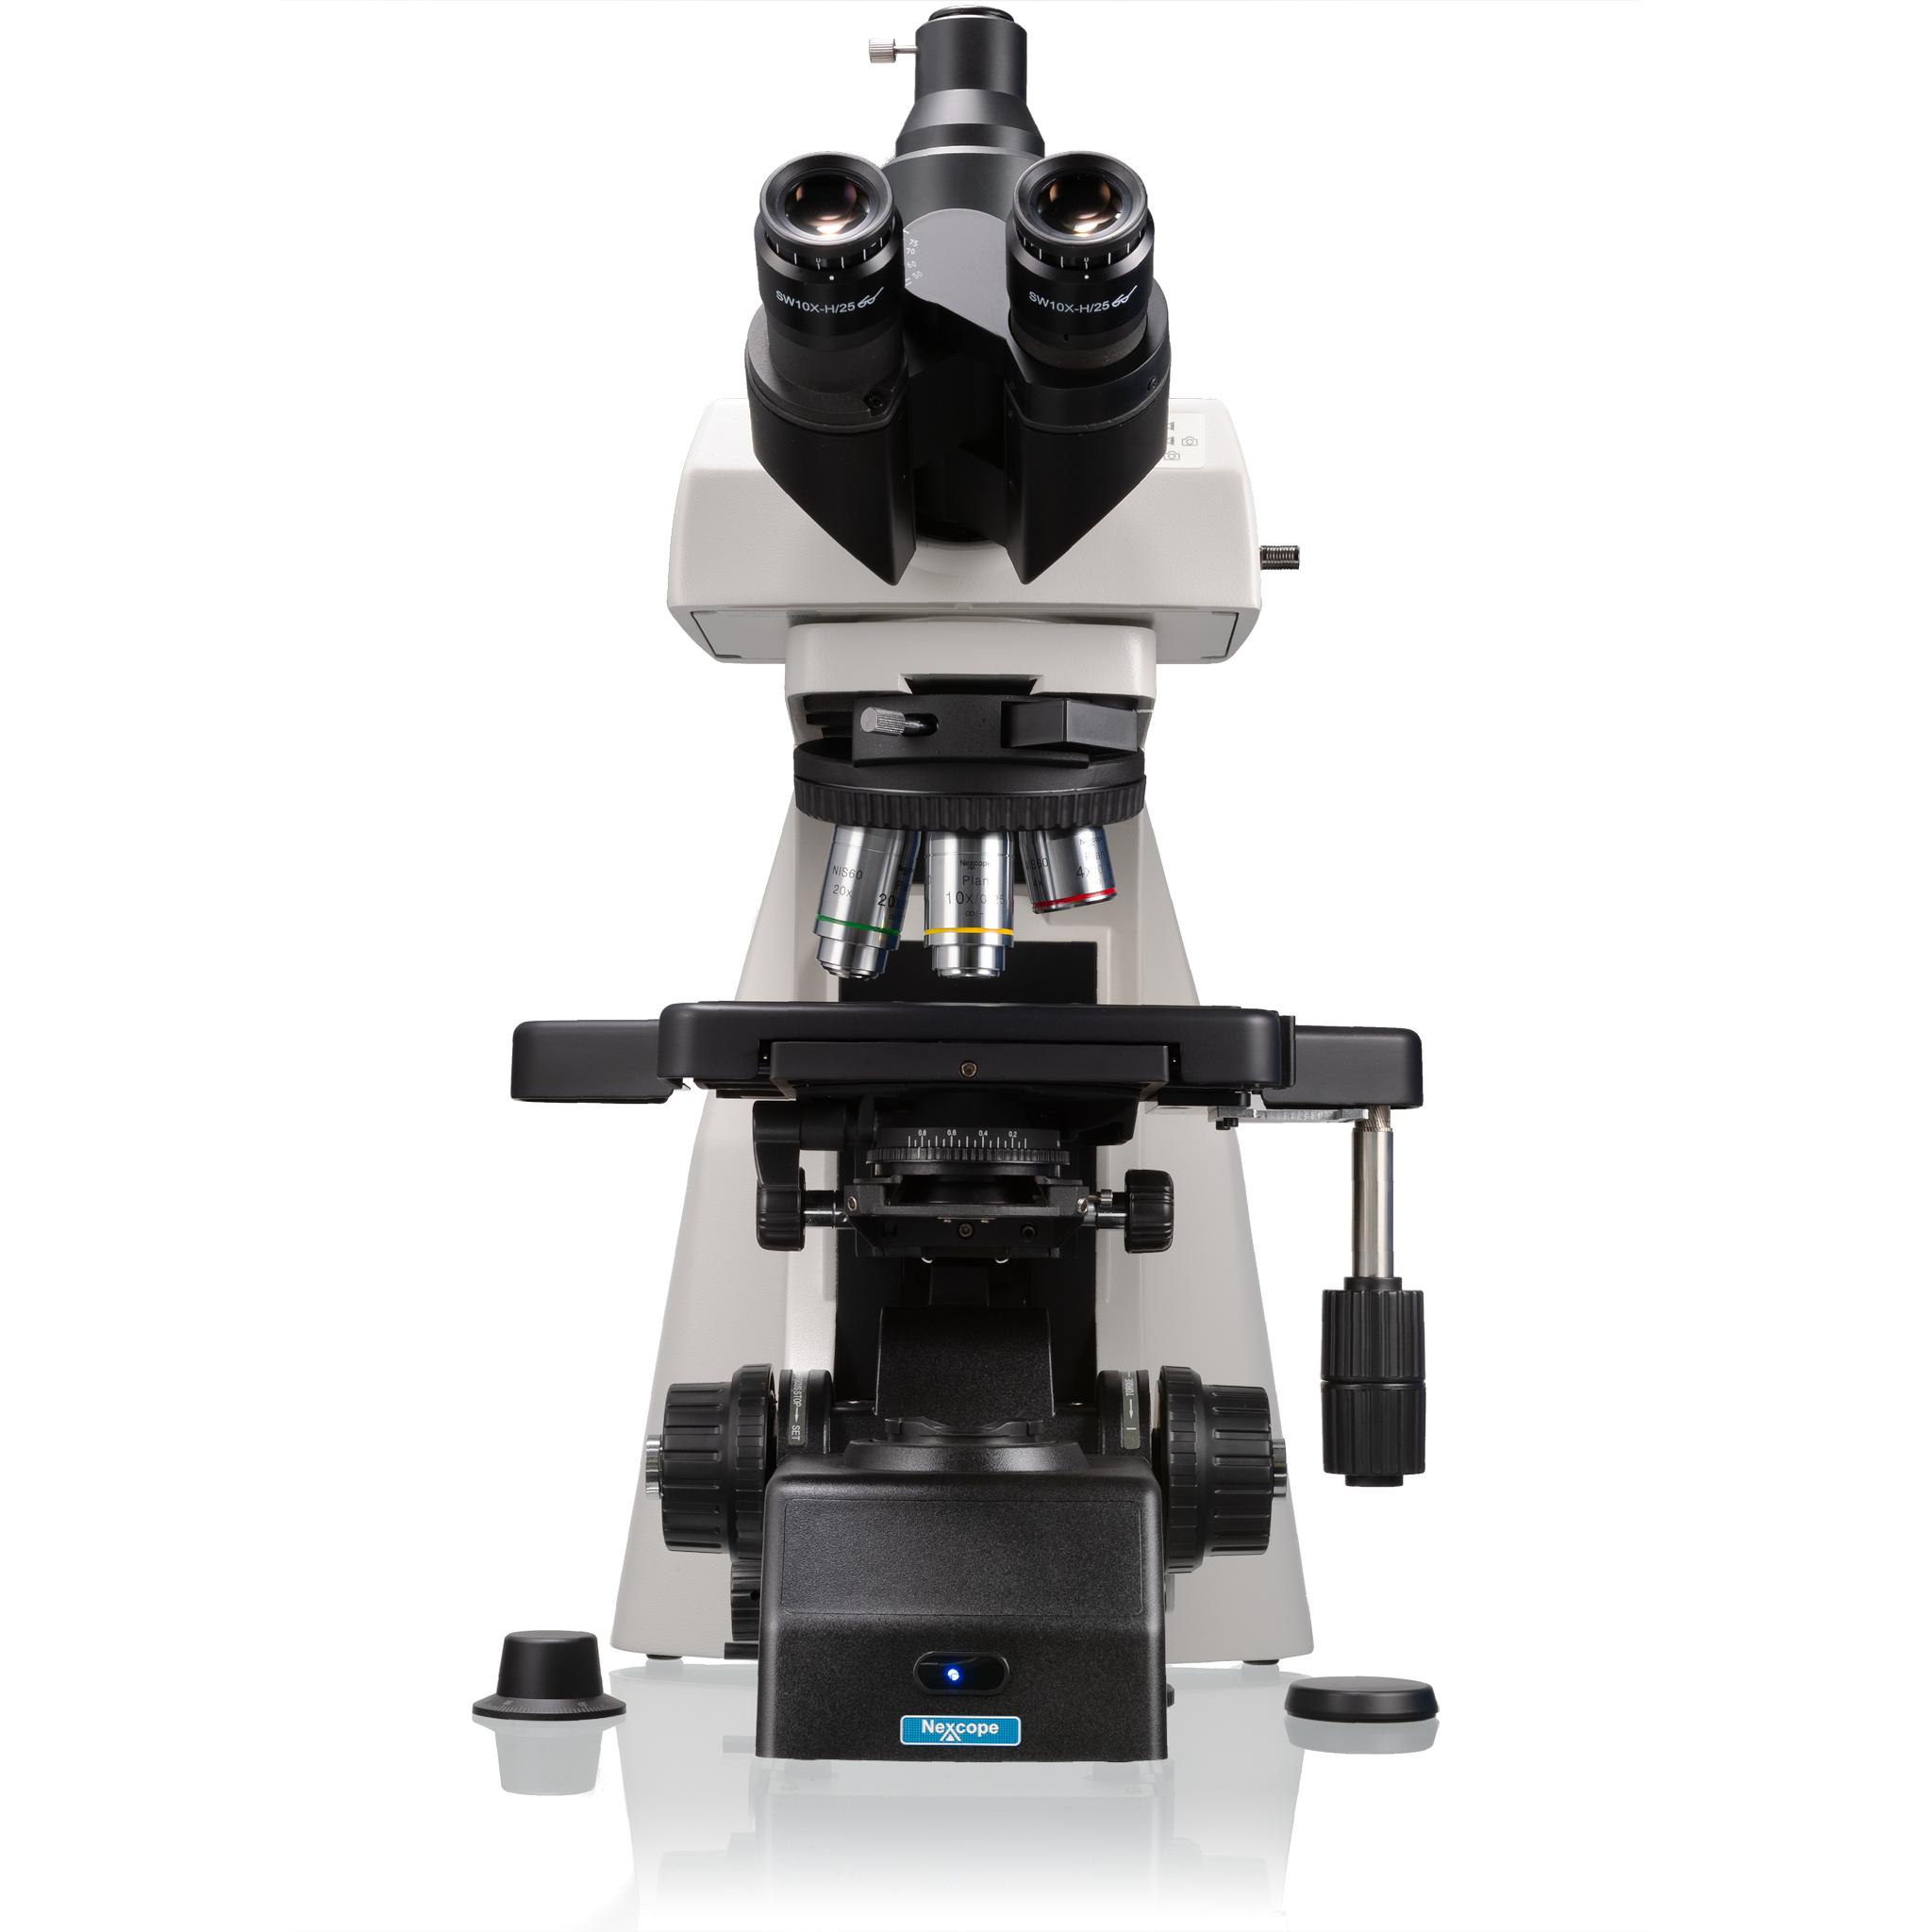 Microscopio da laboratorio professionale Nexcope NE910 con possibilità di collegare tanti accessori